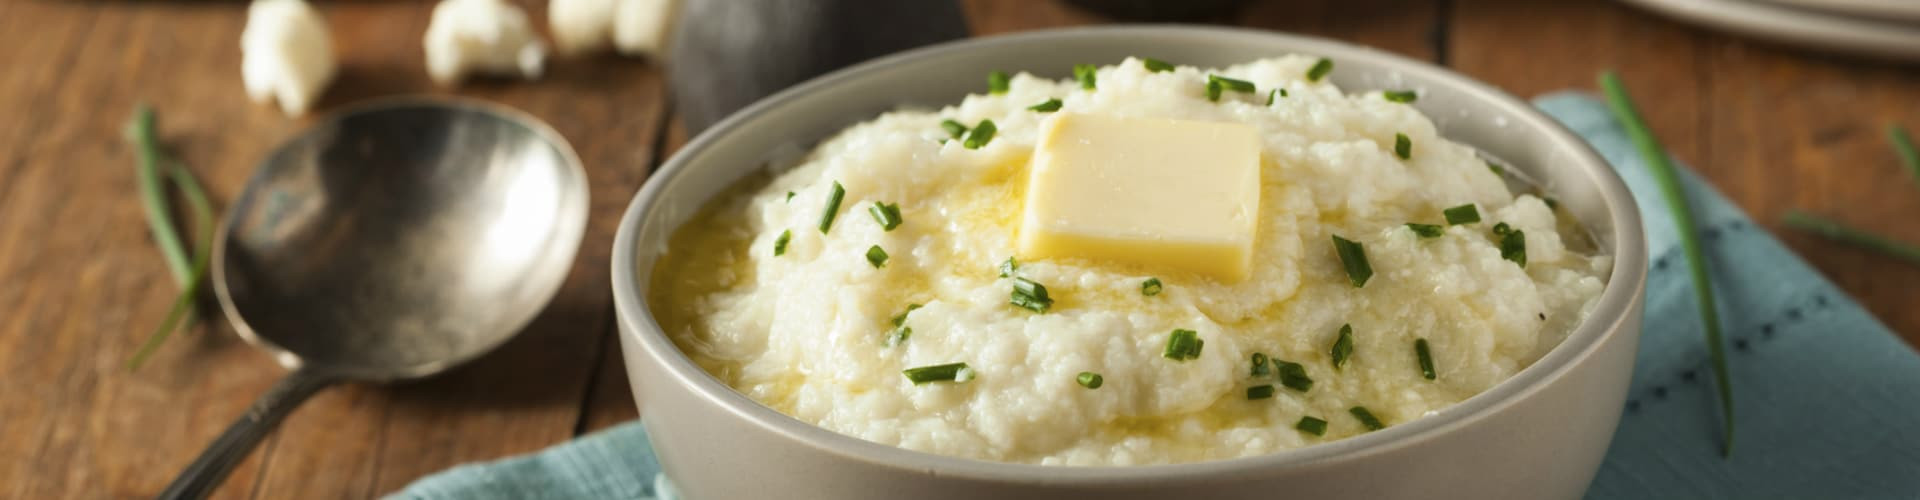 Mashed Potatoes Fiber
 Best Cauliflower Mashed Potato Recipe Under 60 Calories